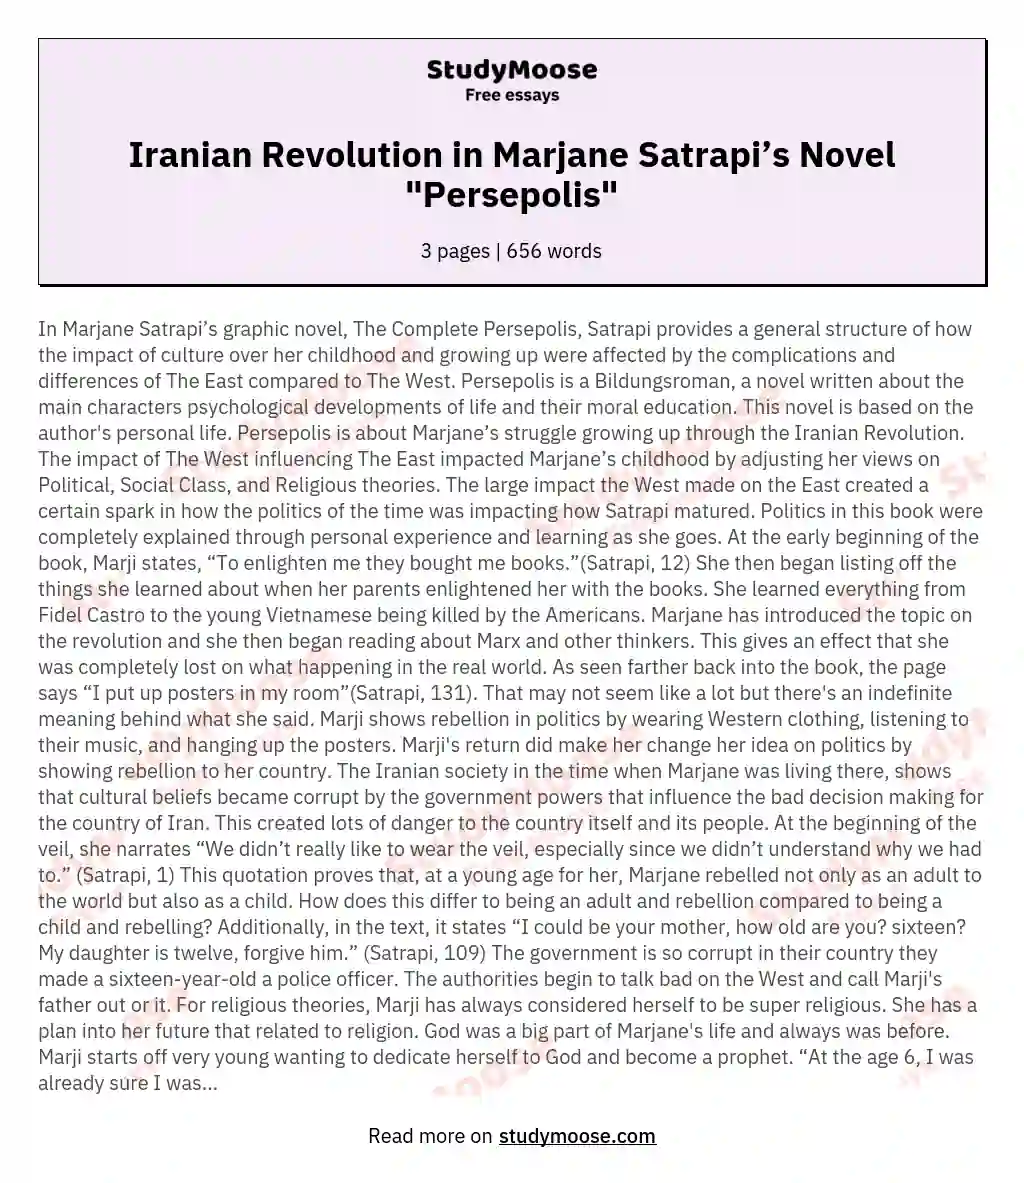 Iranian Revolution in Marjane Satrapi’s Novel "Persepolis"